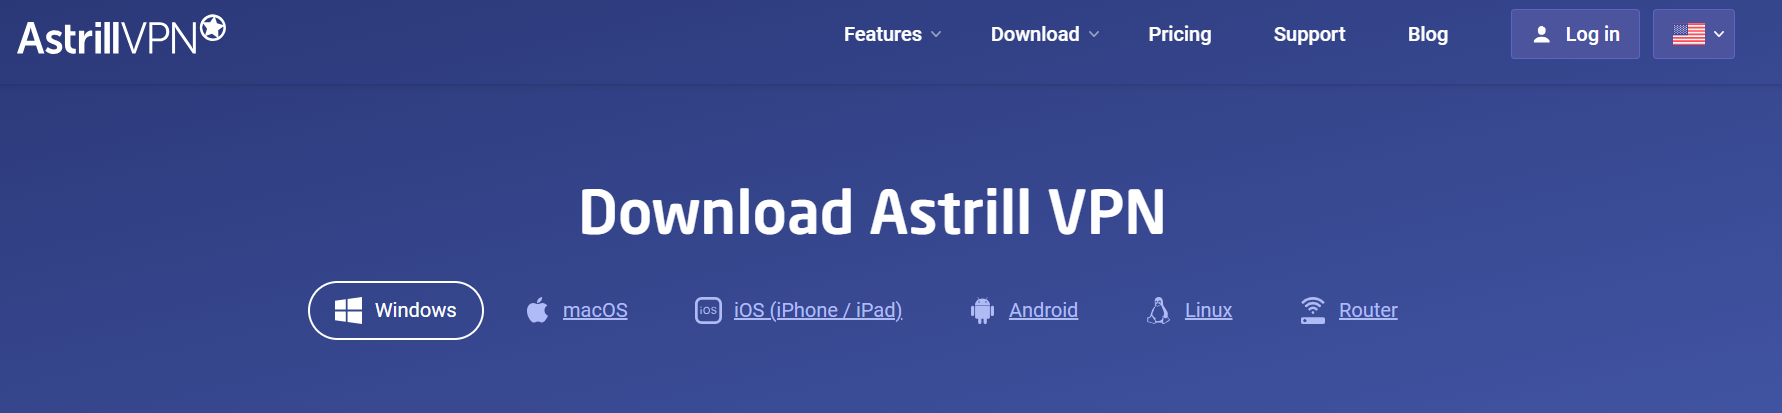 AstrillVPN app 